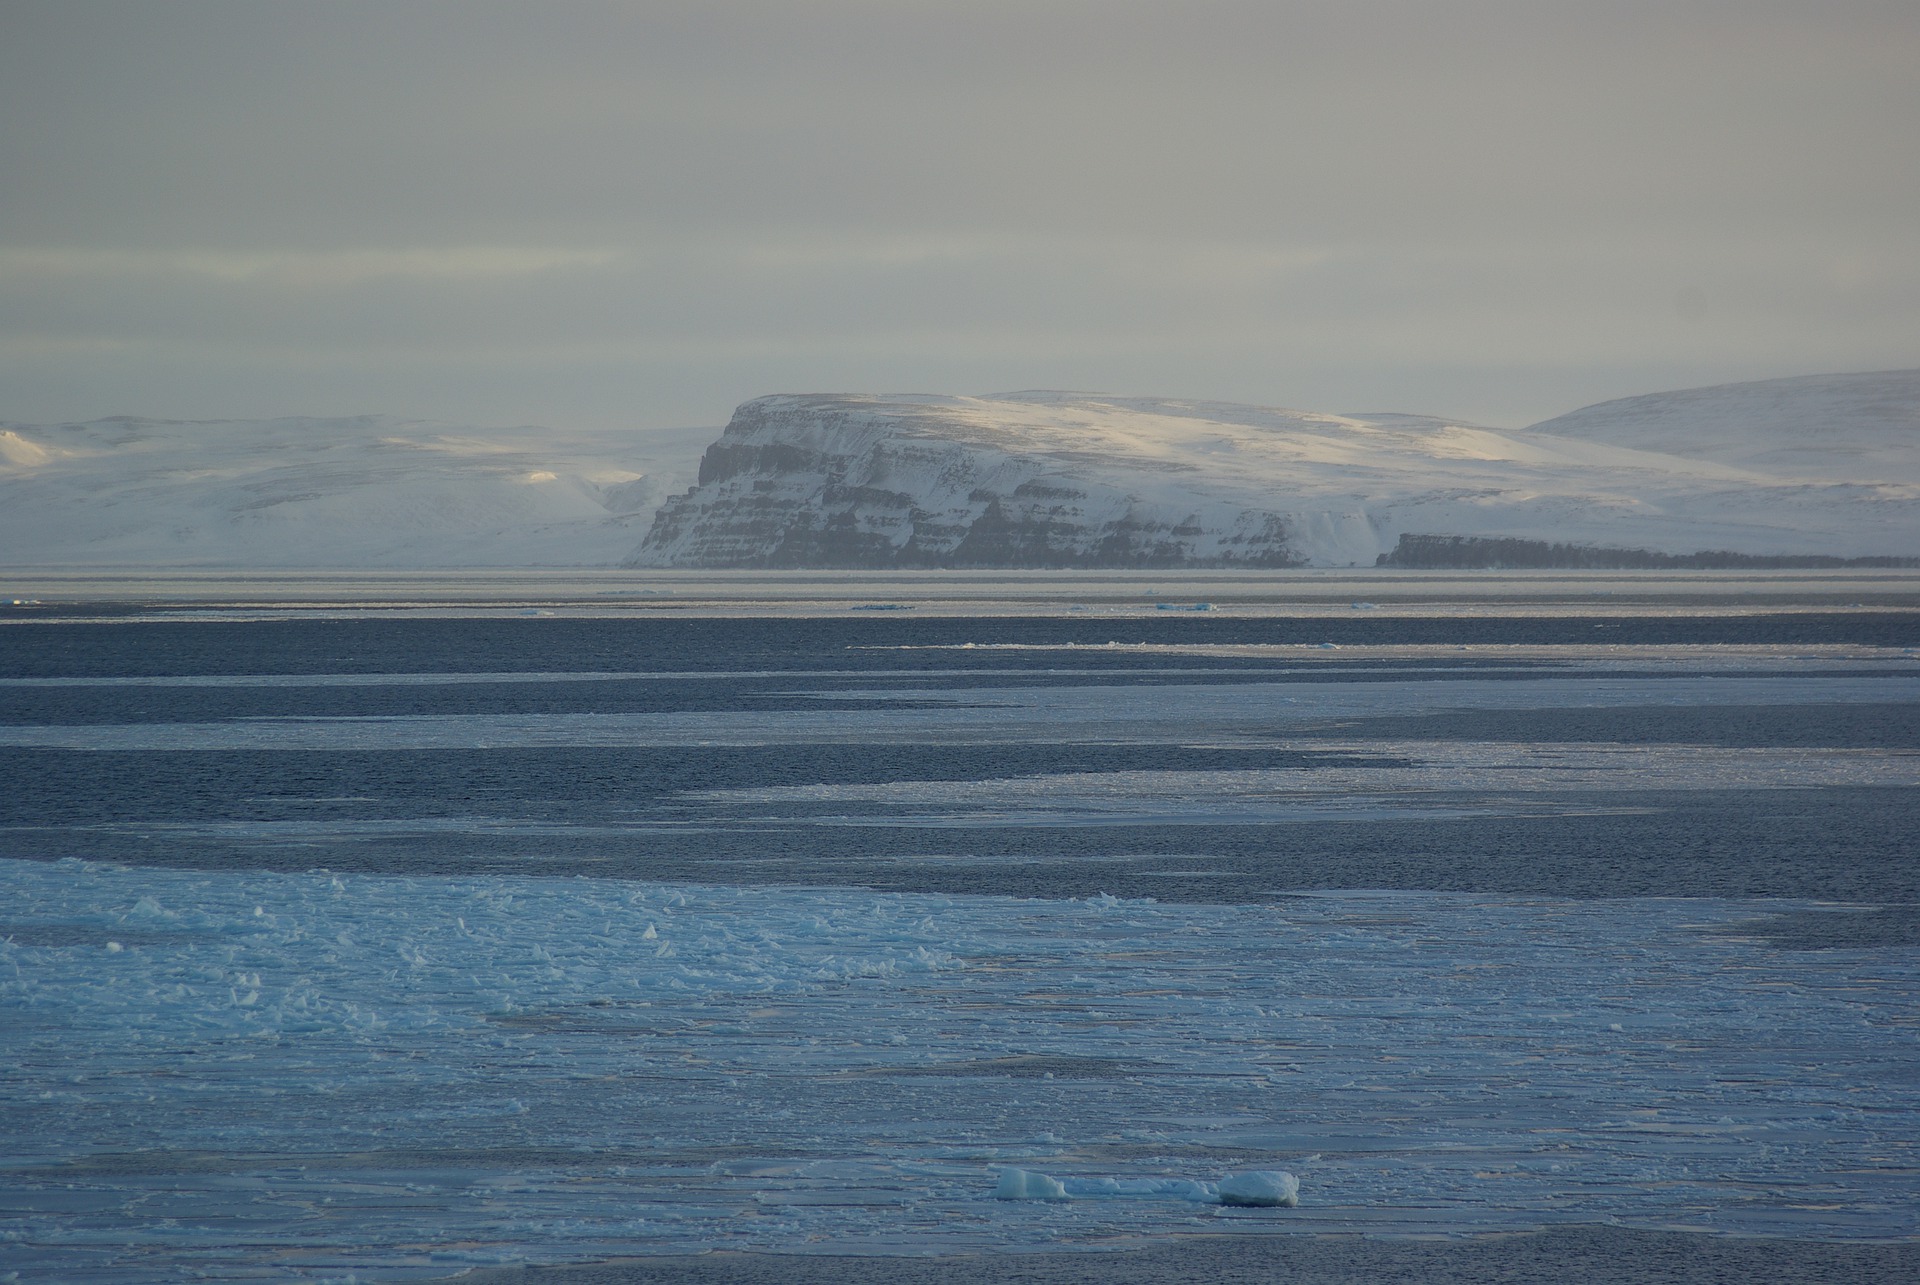 Арктика сегодня: стратегия, льготы и угольный терминал